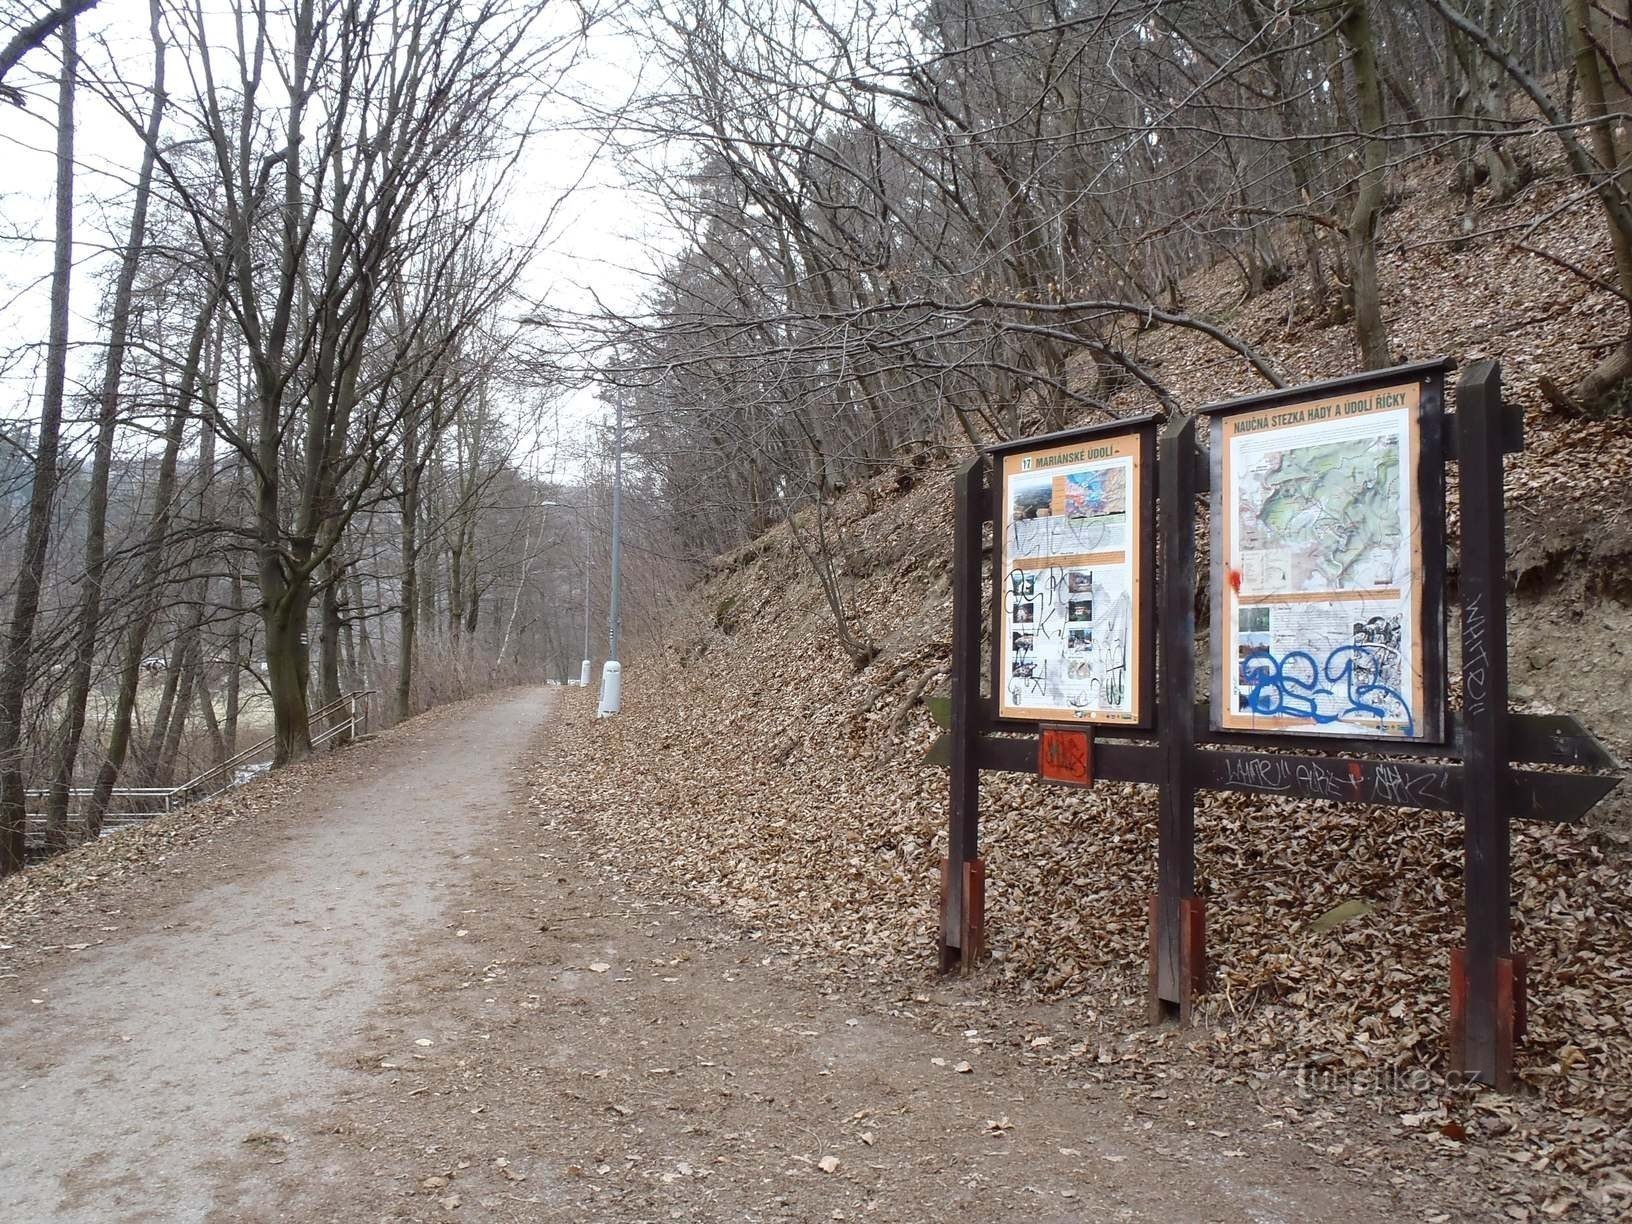 Jena từ những con đường đến Mariánské údolí (biển báo màu xanh và đỏ) - ngày 6.2.2012 tháng XNUMX năm XNUMX